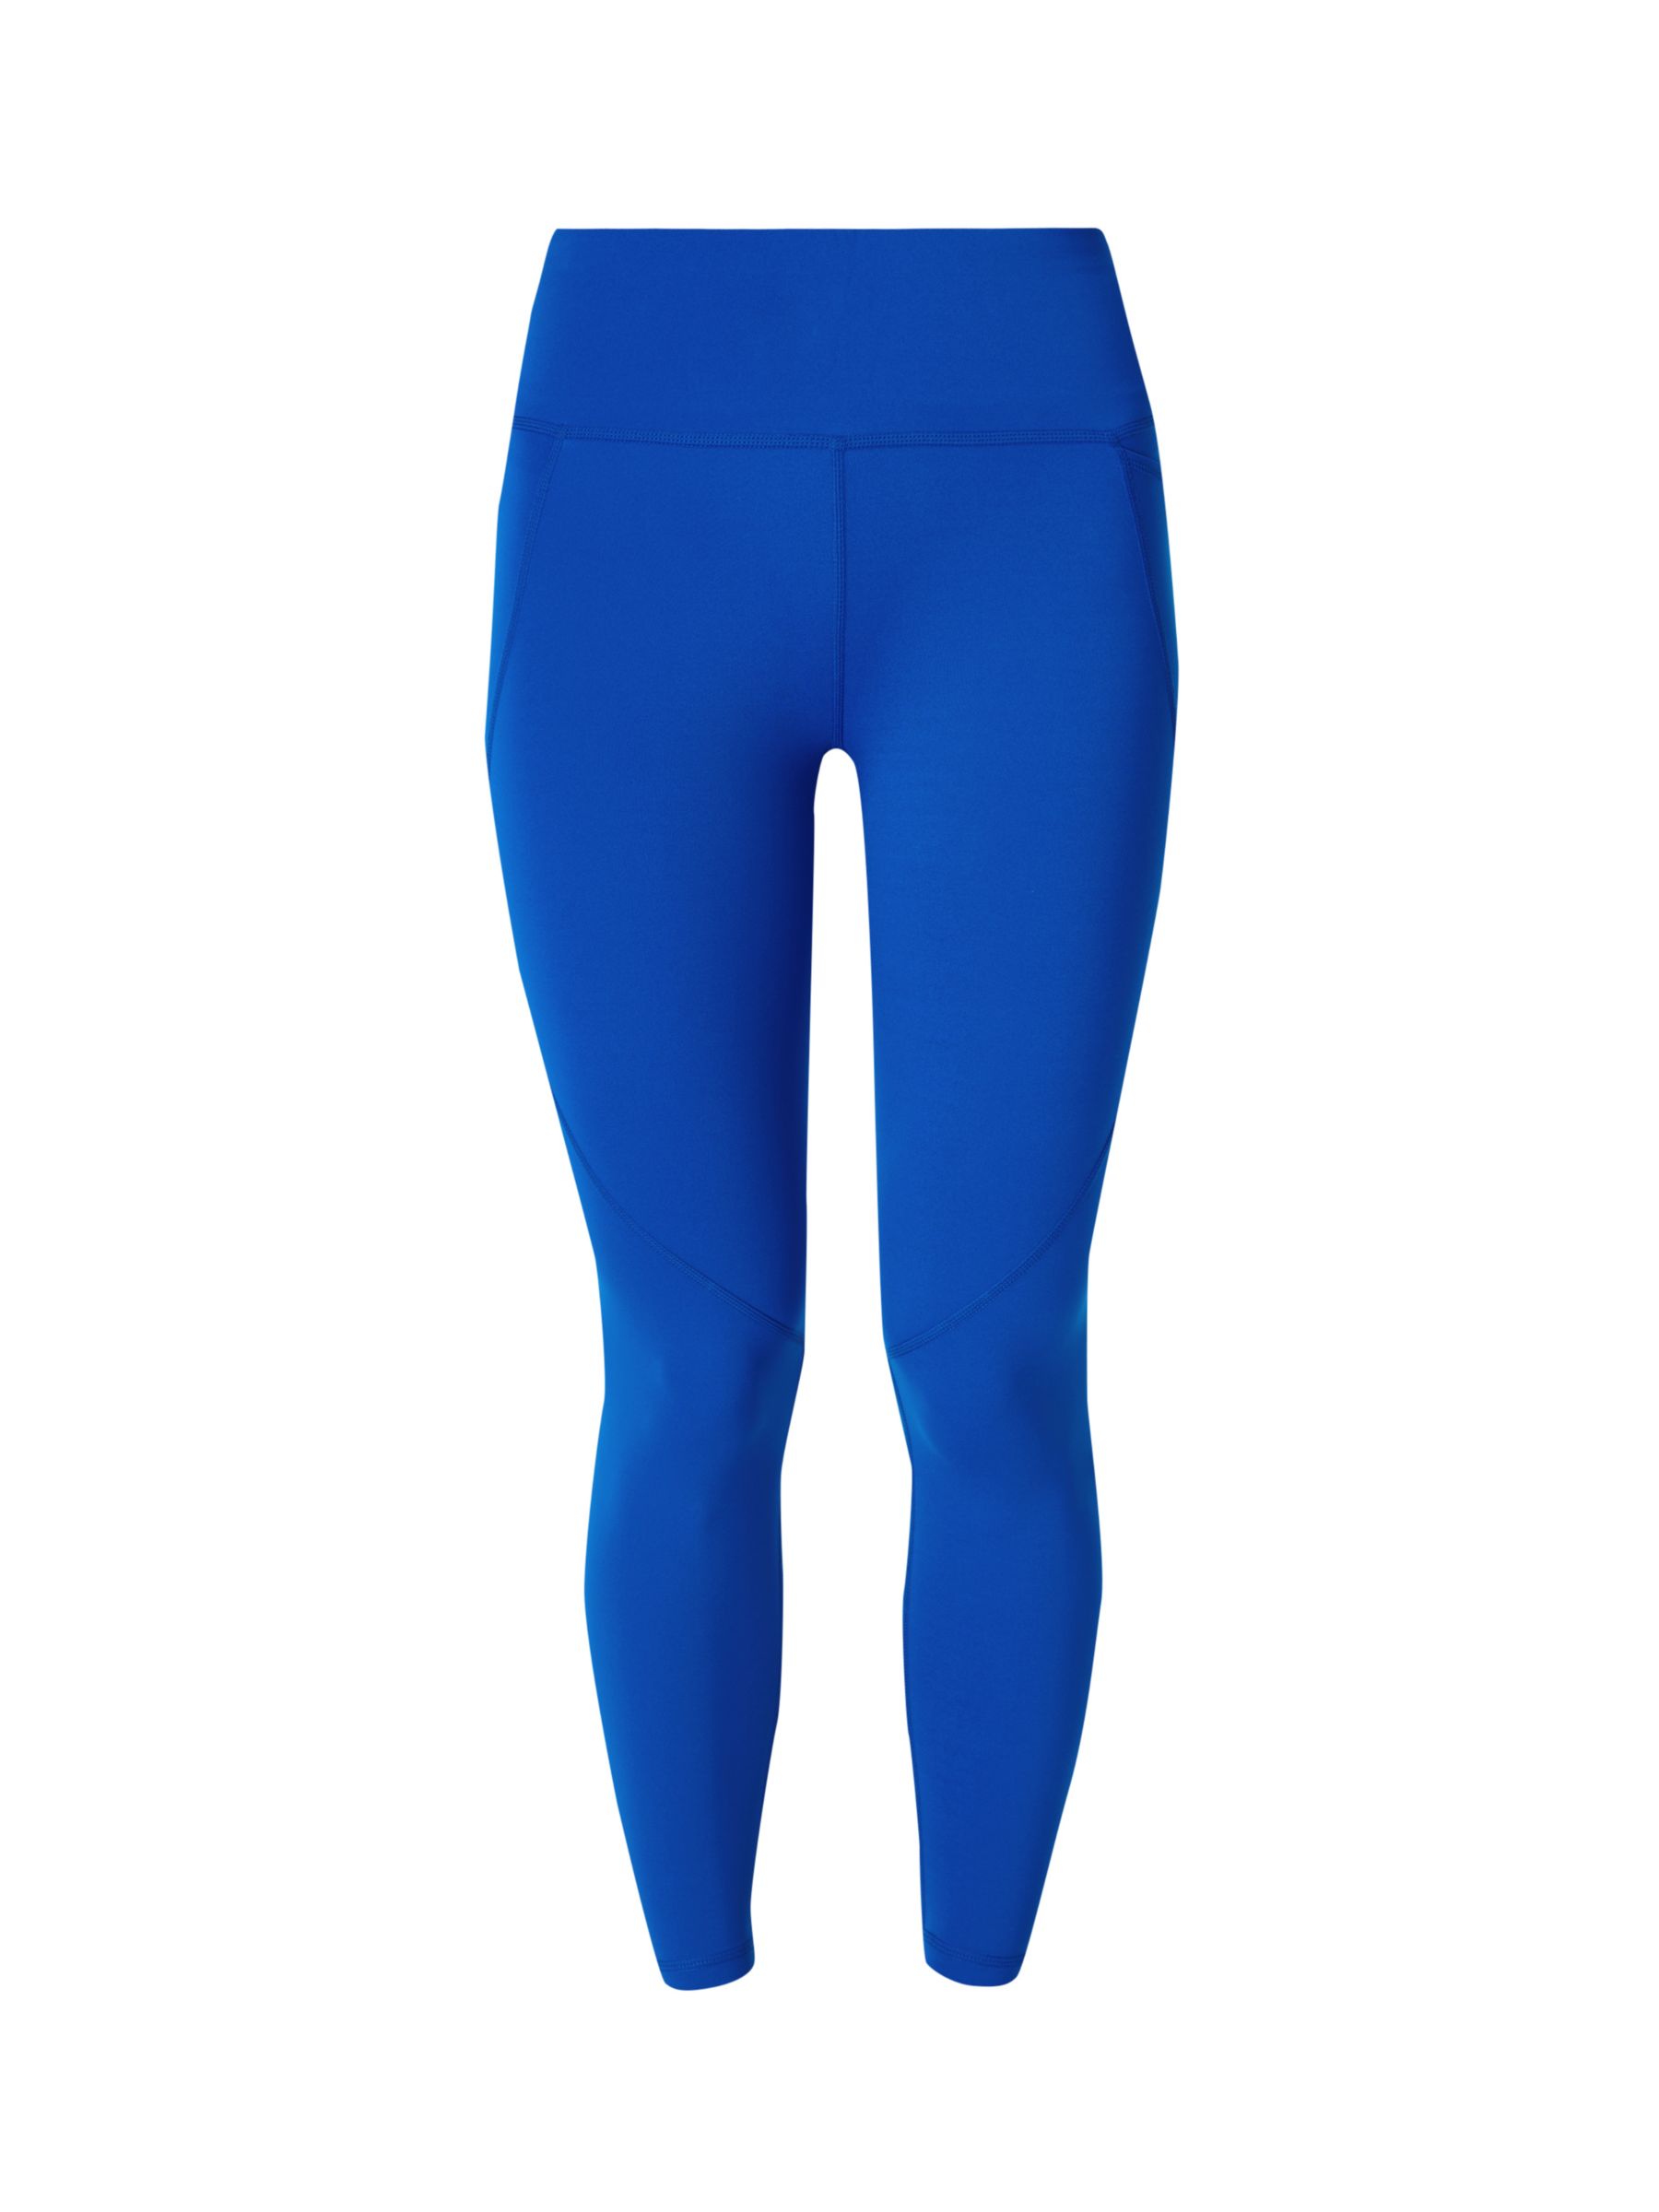 Power 7/8 Gym Leggings - Blue Deconstructed Check Print, Women's Leggings